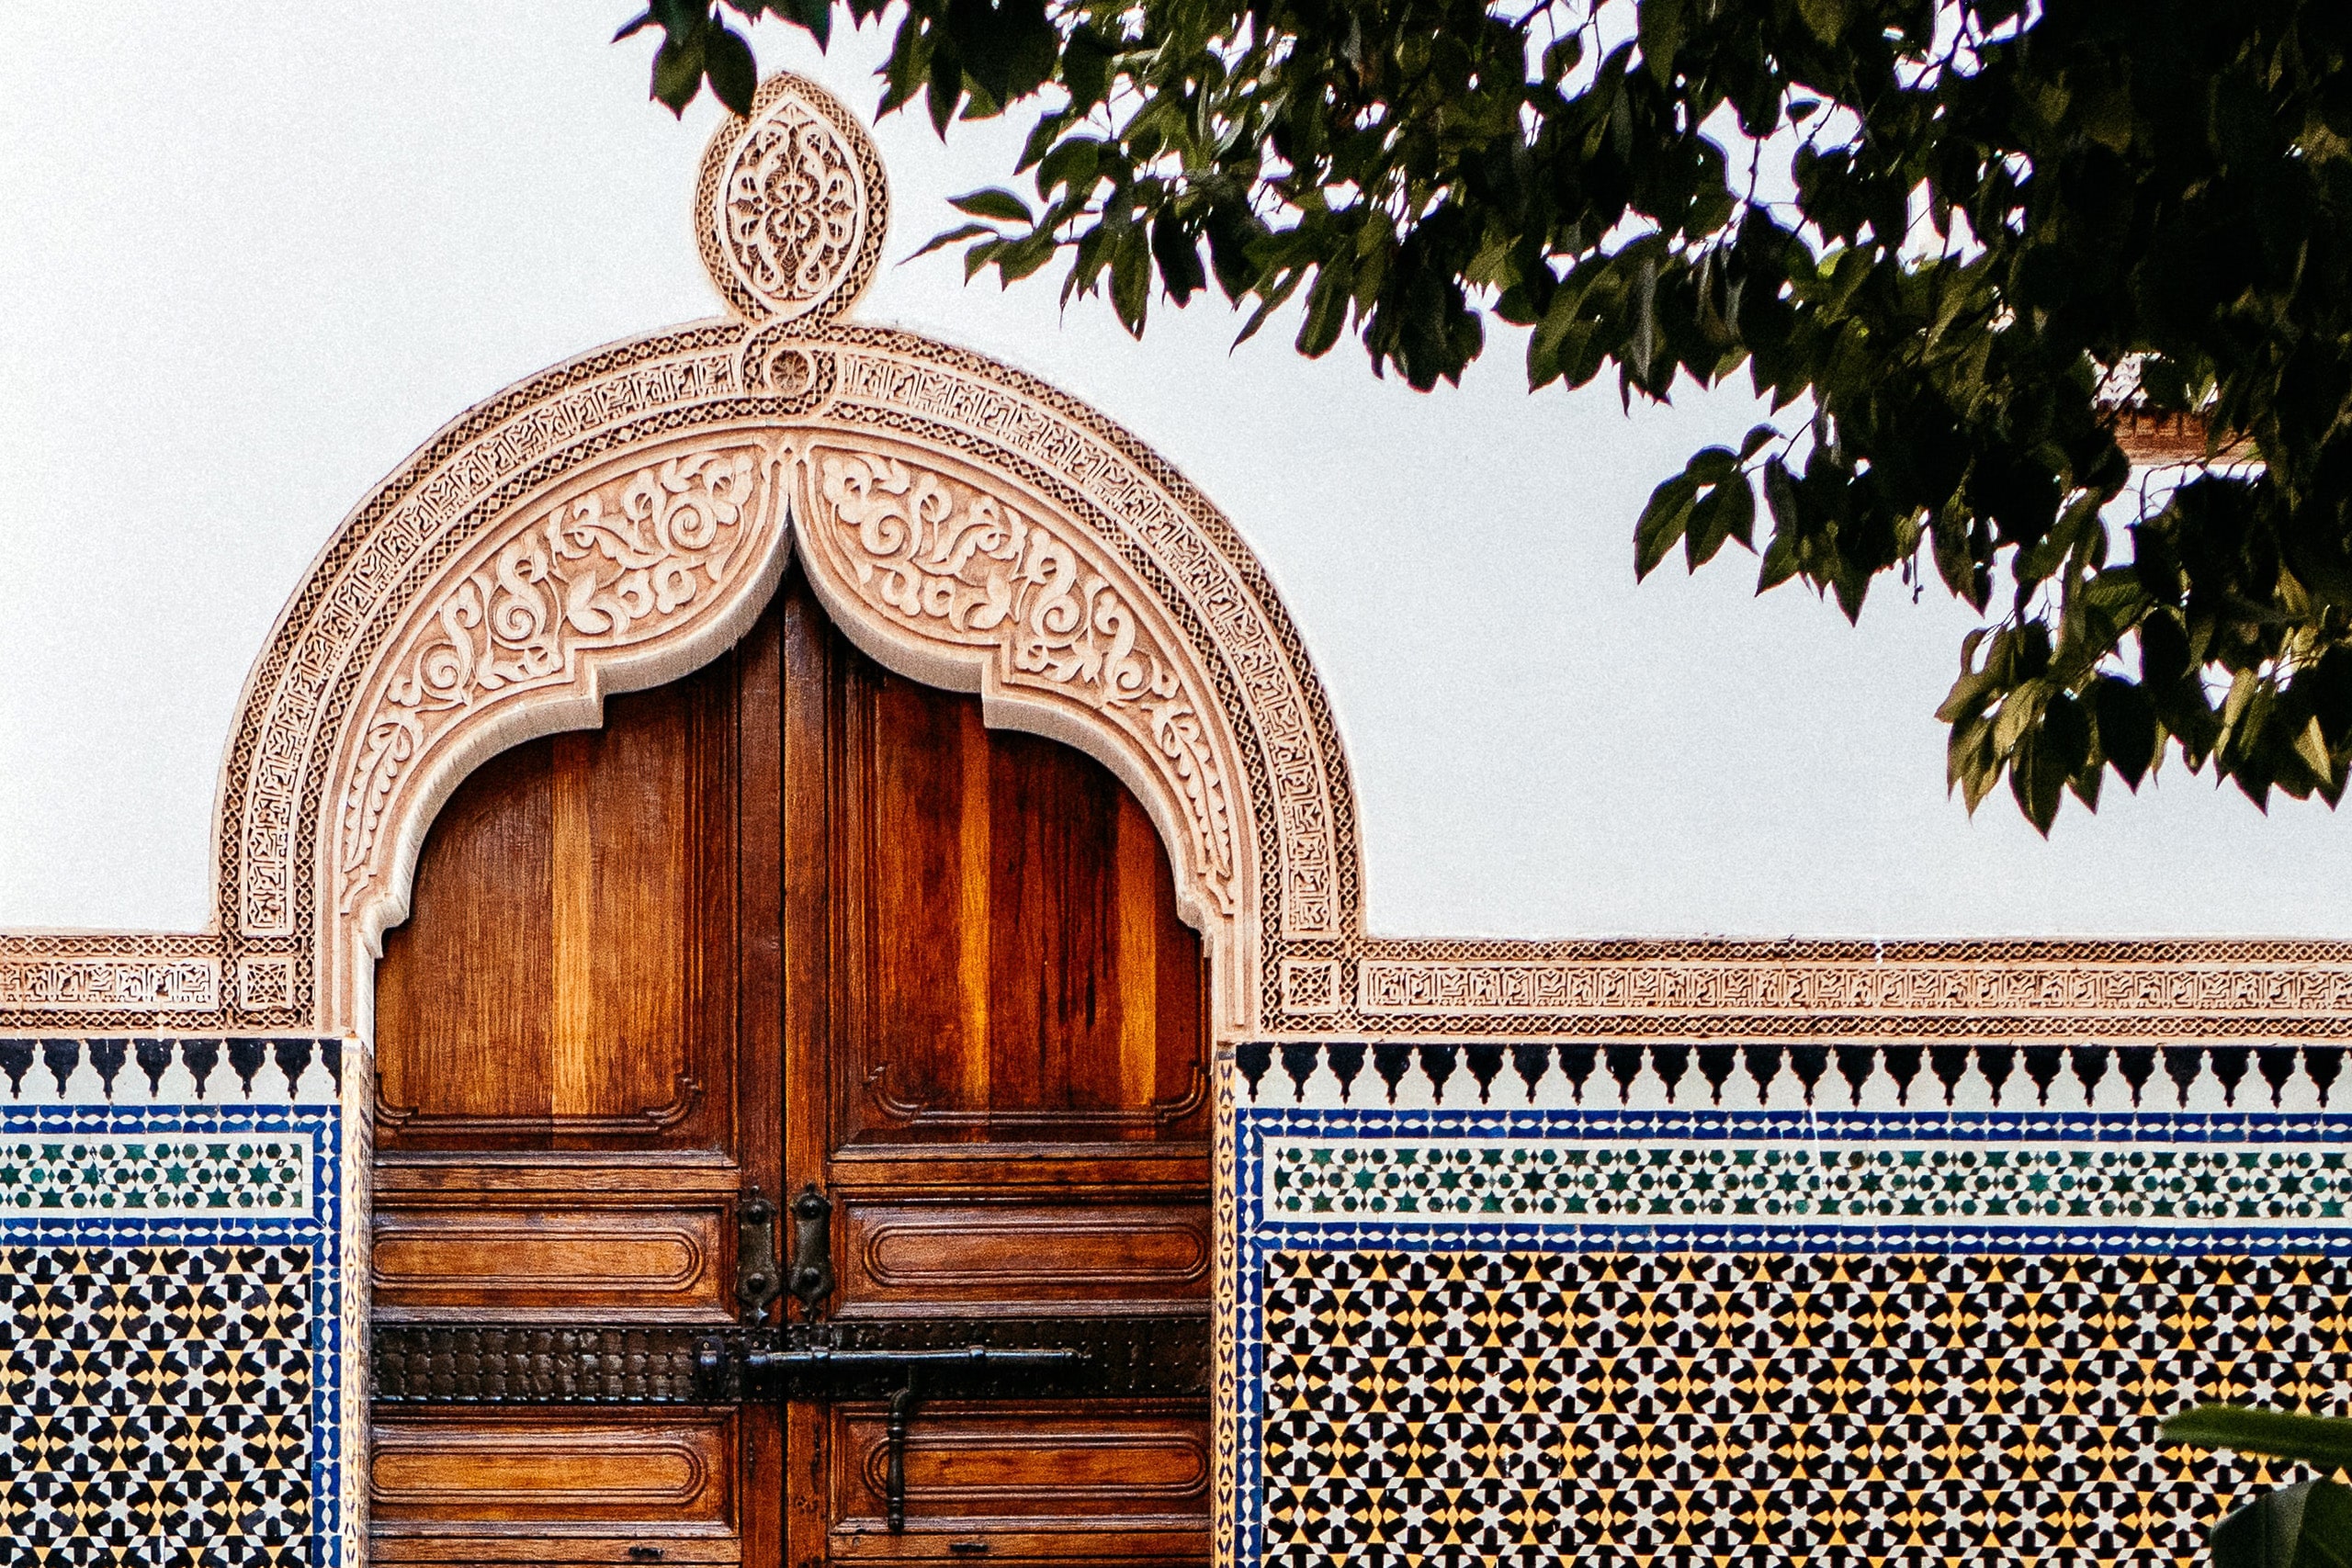 Se smukke udsmykninger i Marrakech, Marokko